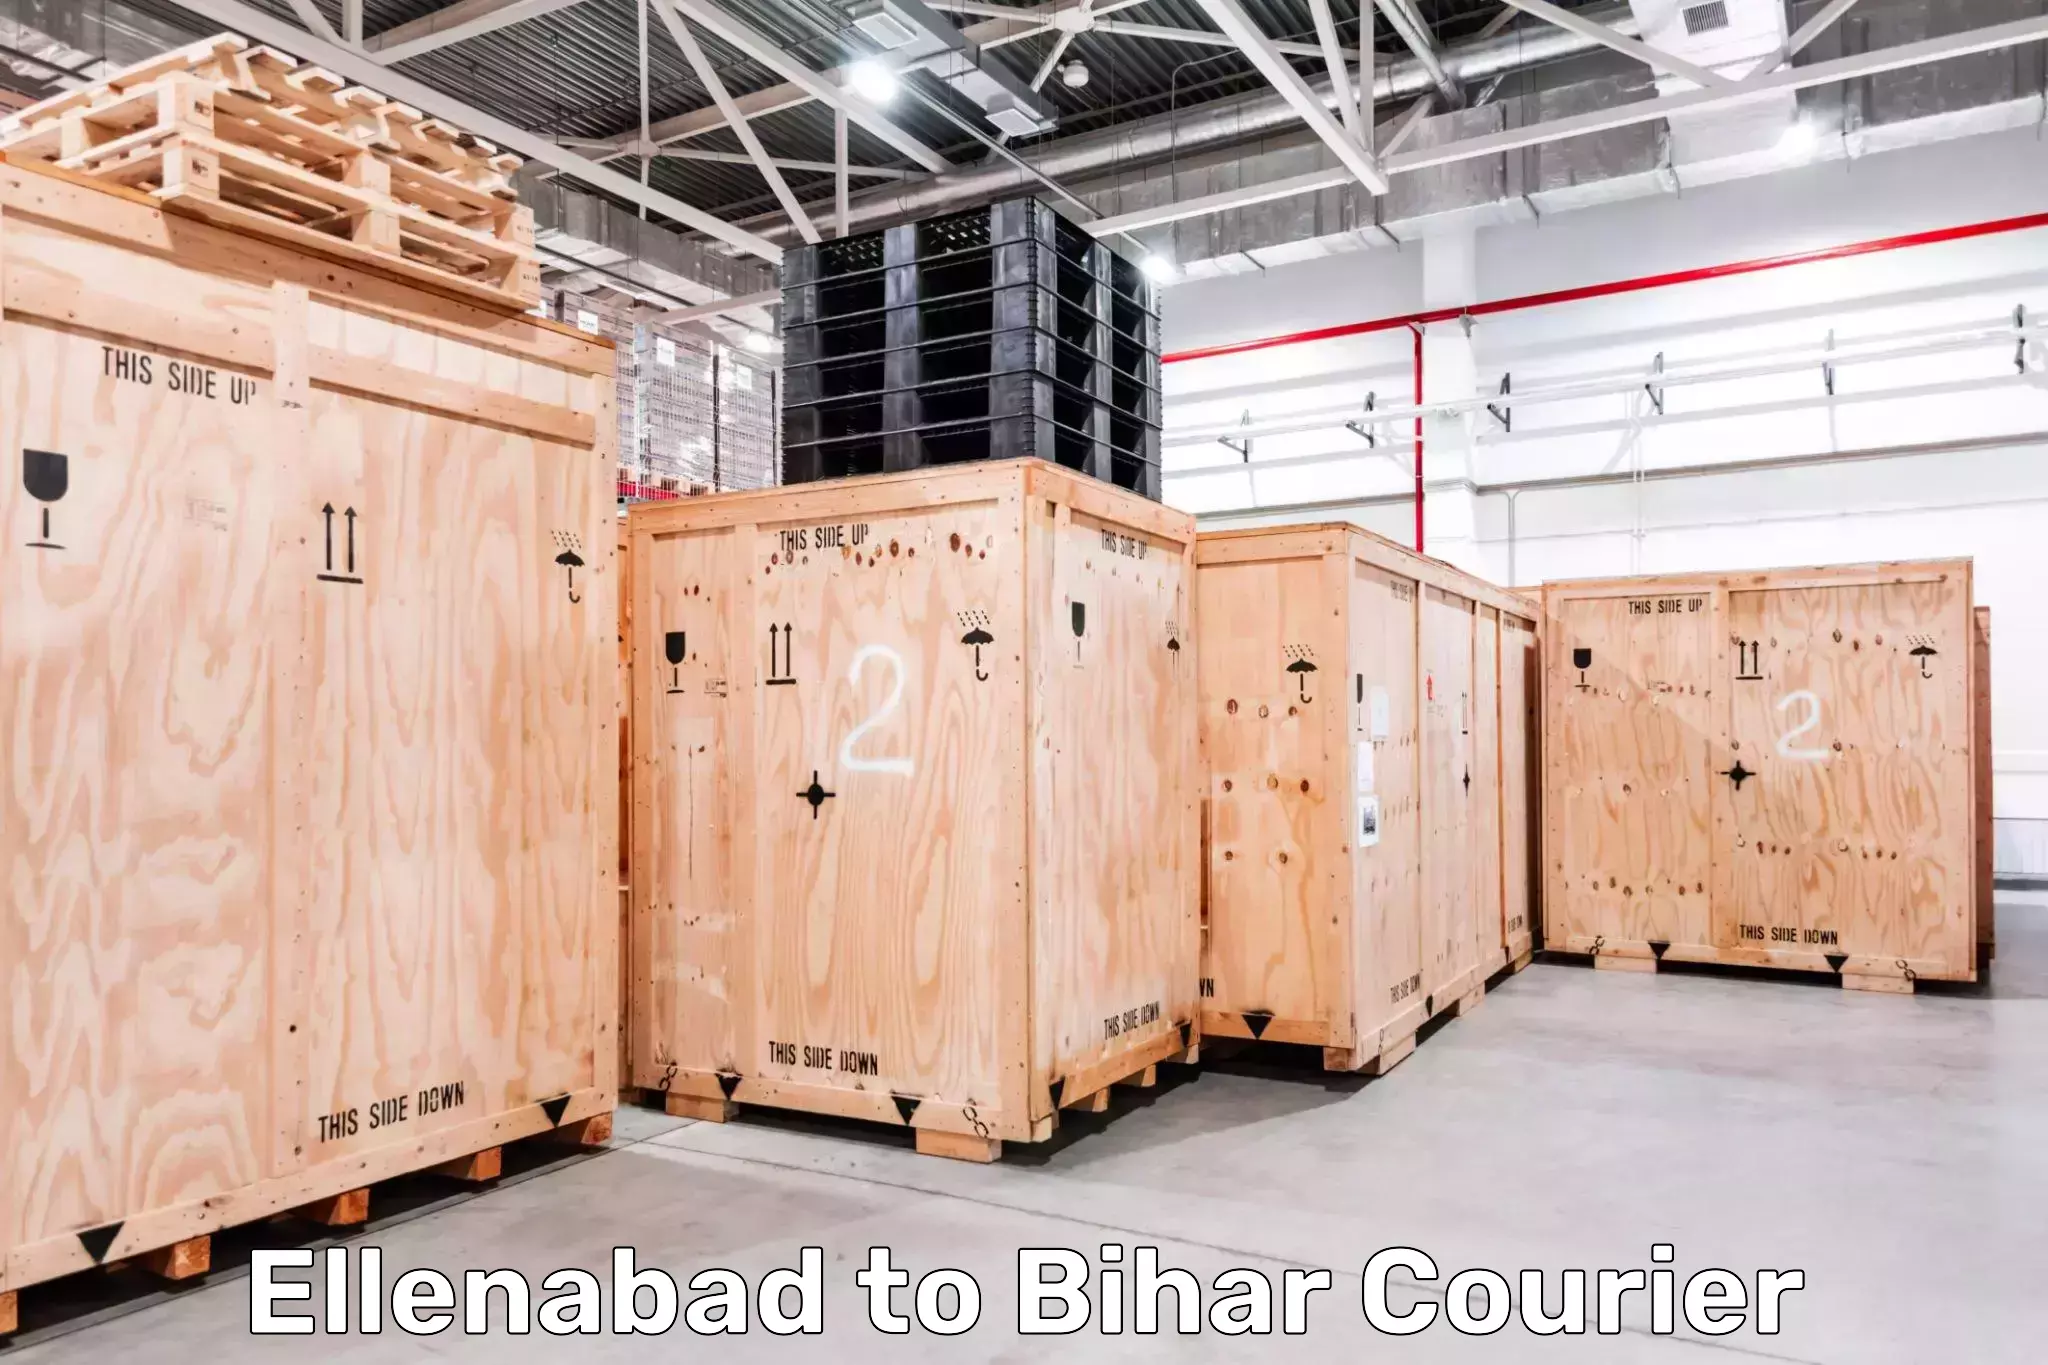 Online courier booking Ellenabad to Bihar